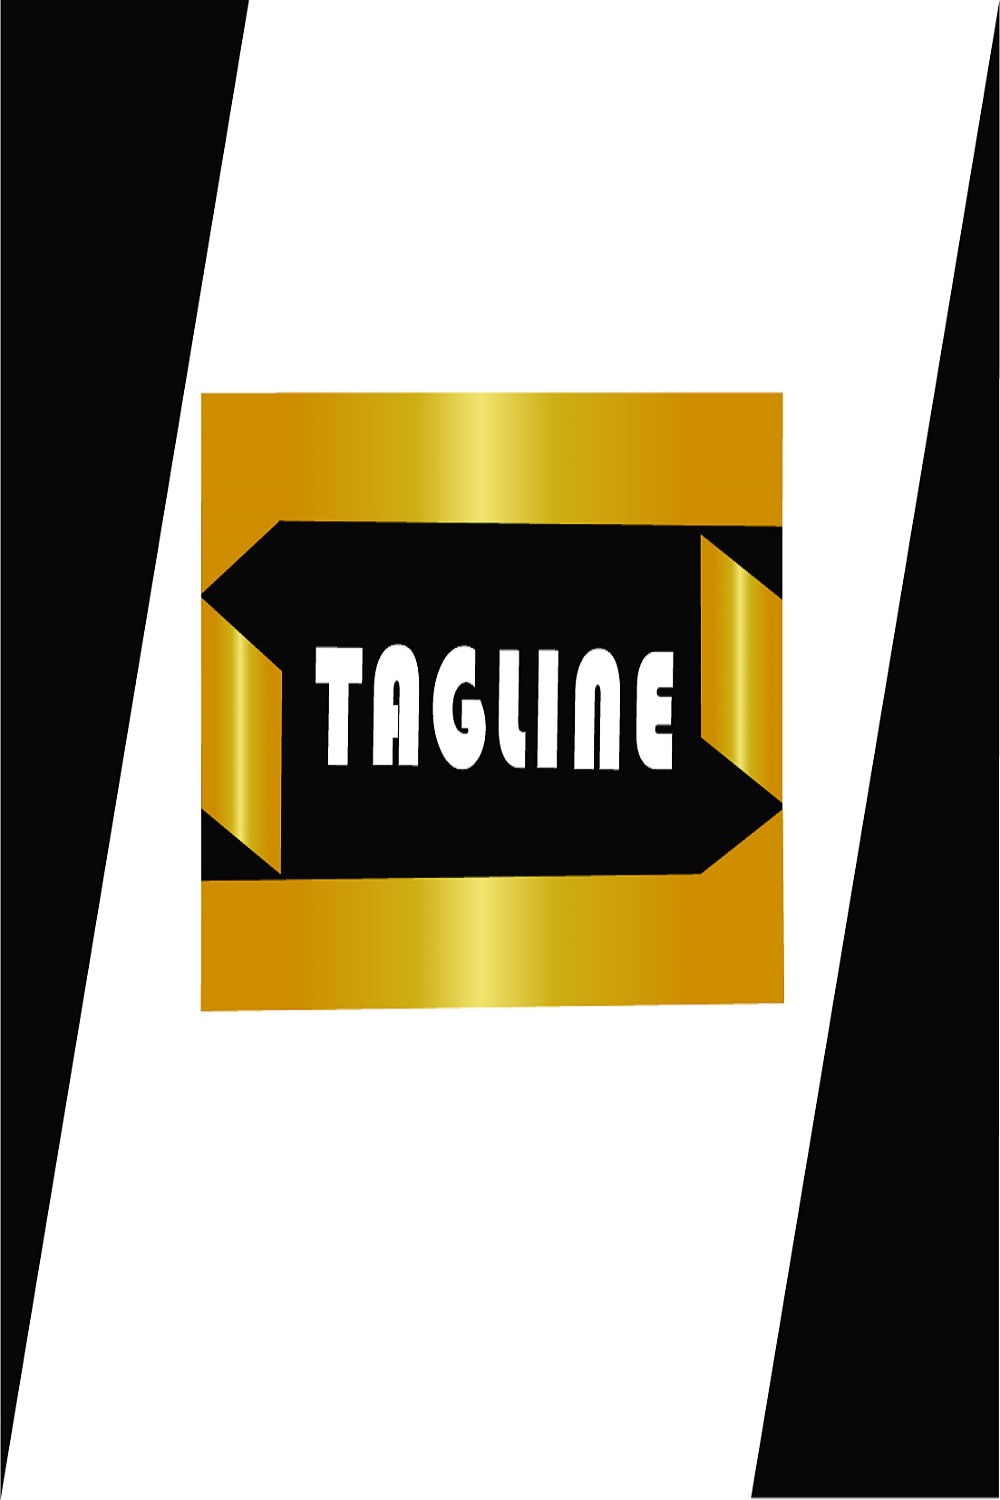 Badge Logo Style pinterest image.